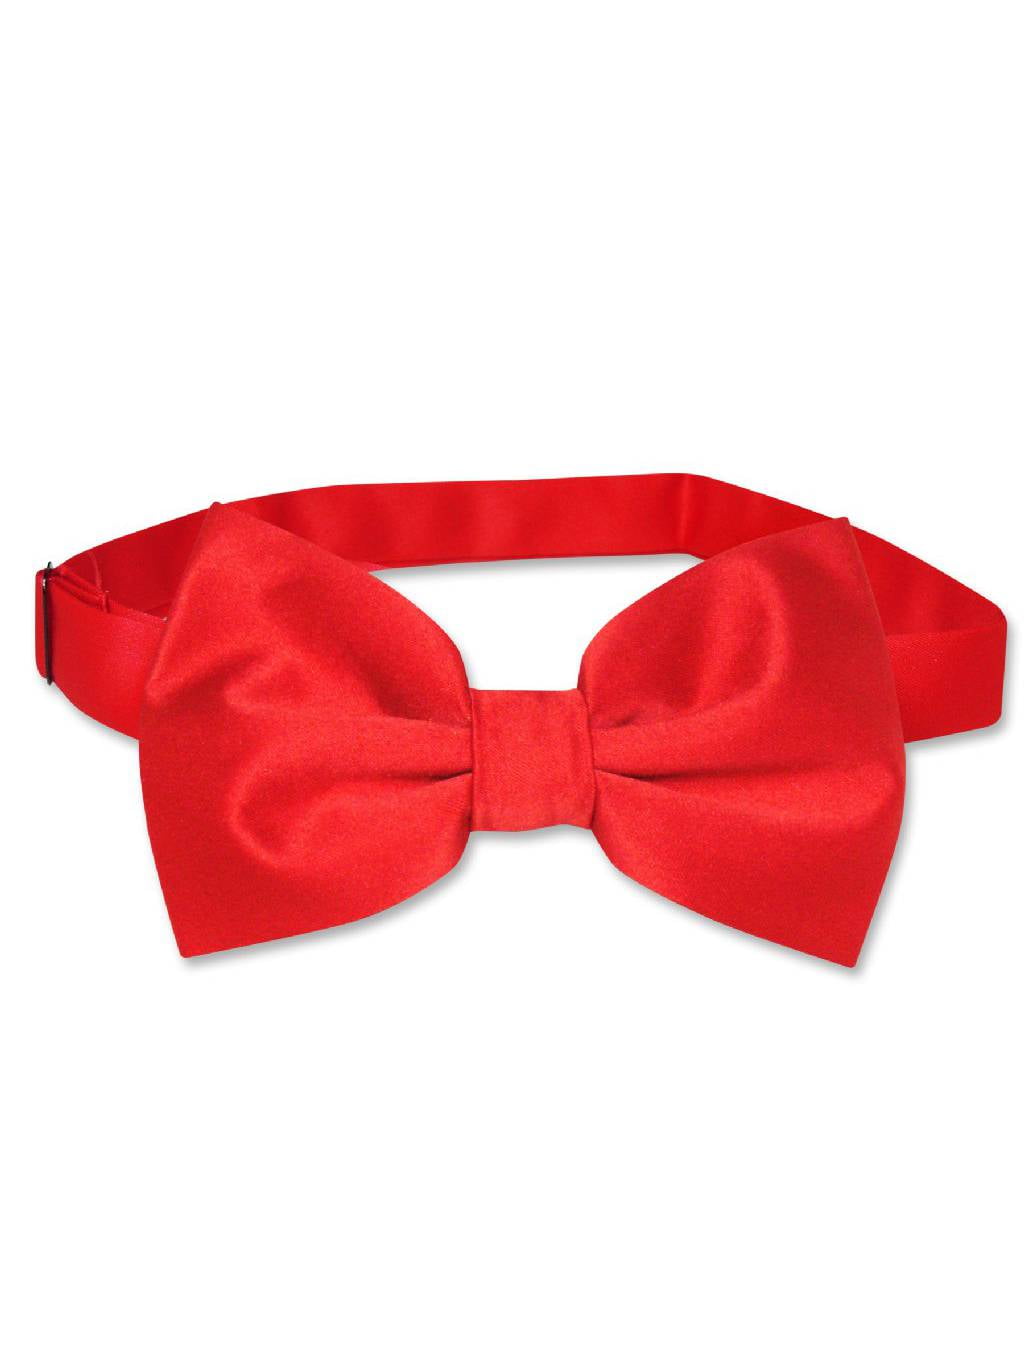 New in box Vesuvio Napoli men's self tie bow tie 100% silk formal party red 